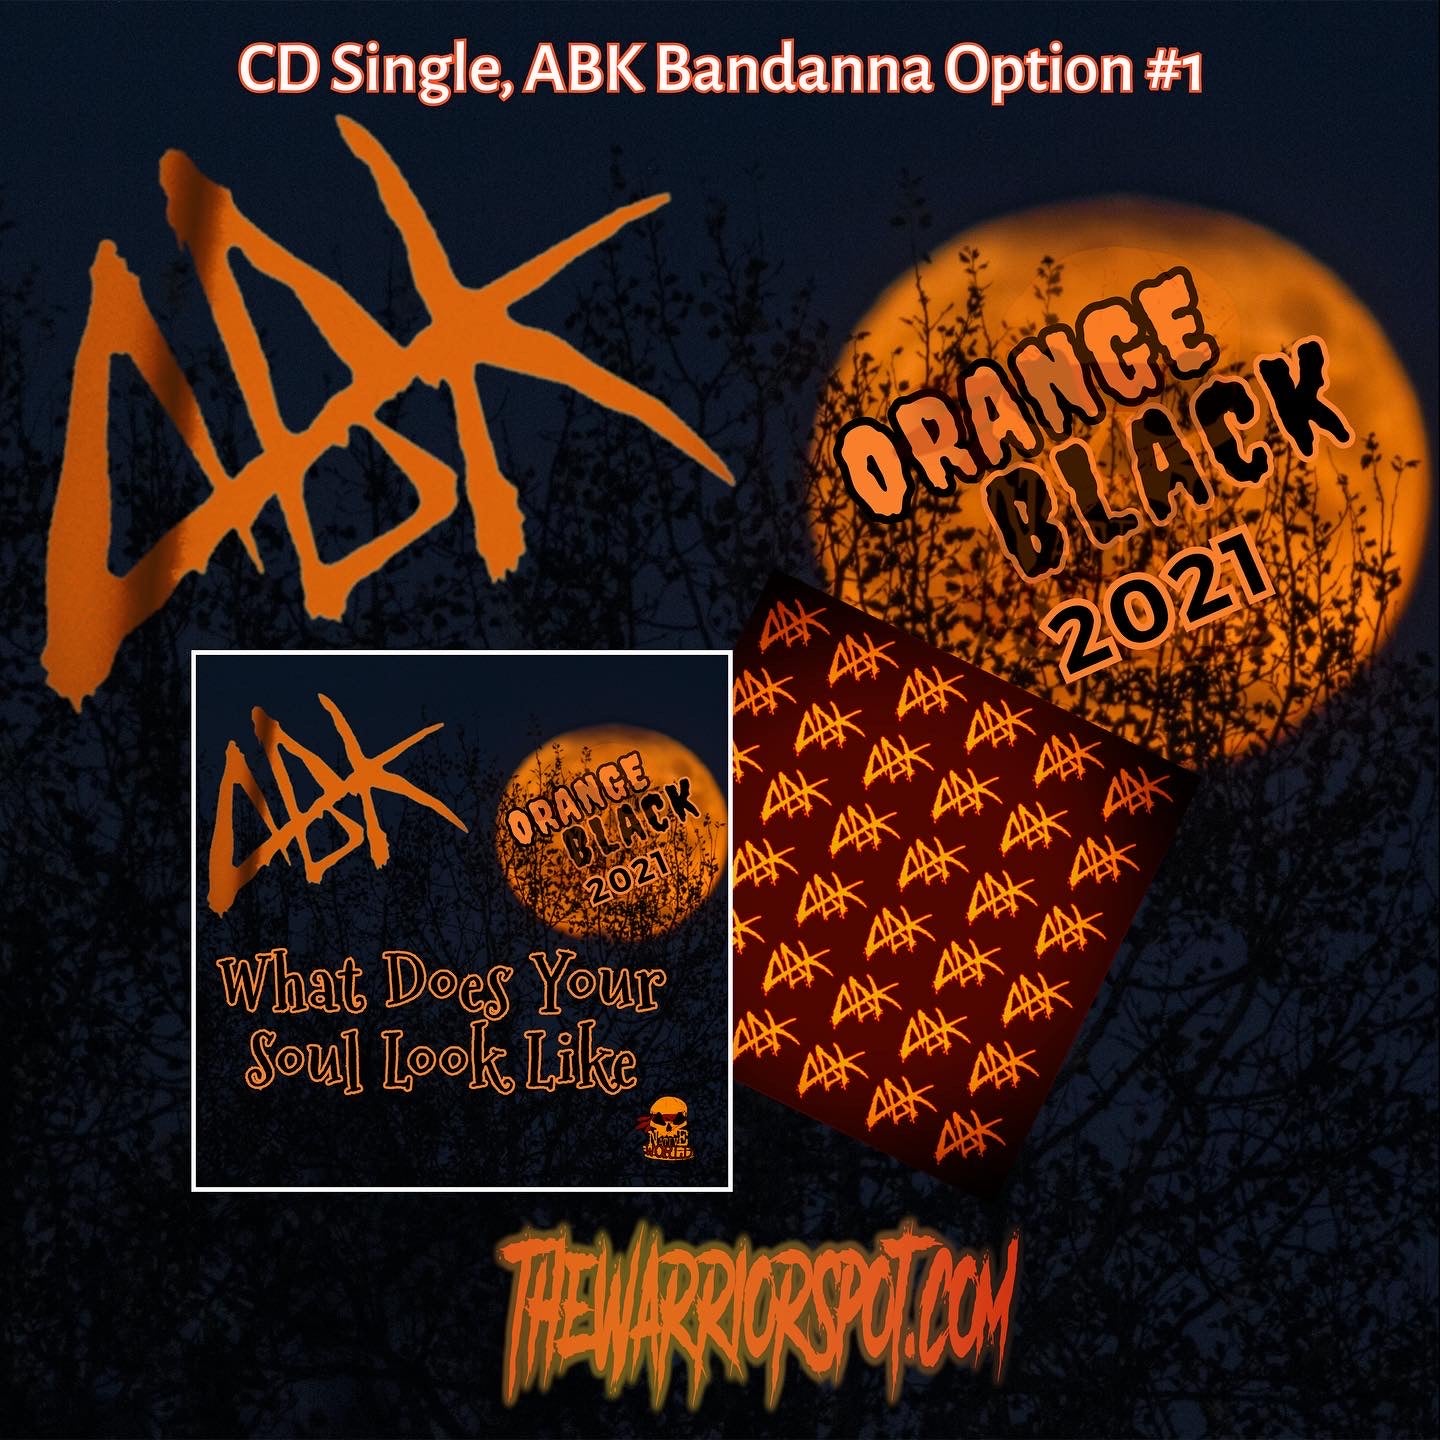 ABK Orange Black 2021 Option 1